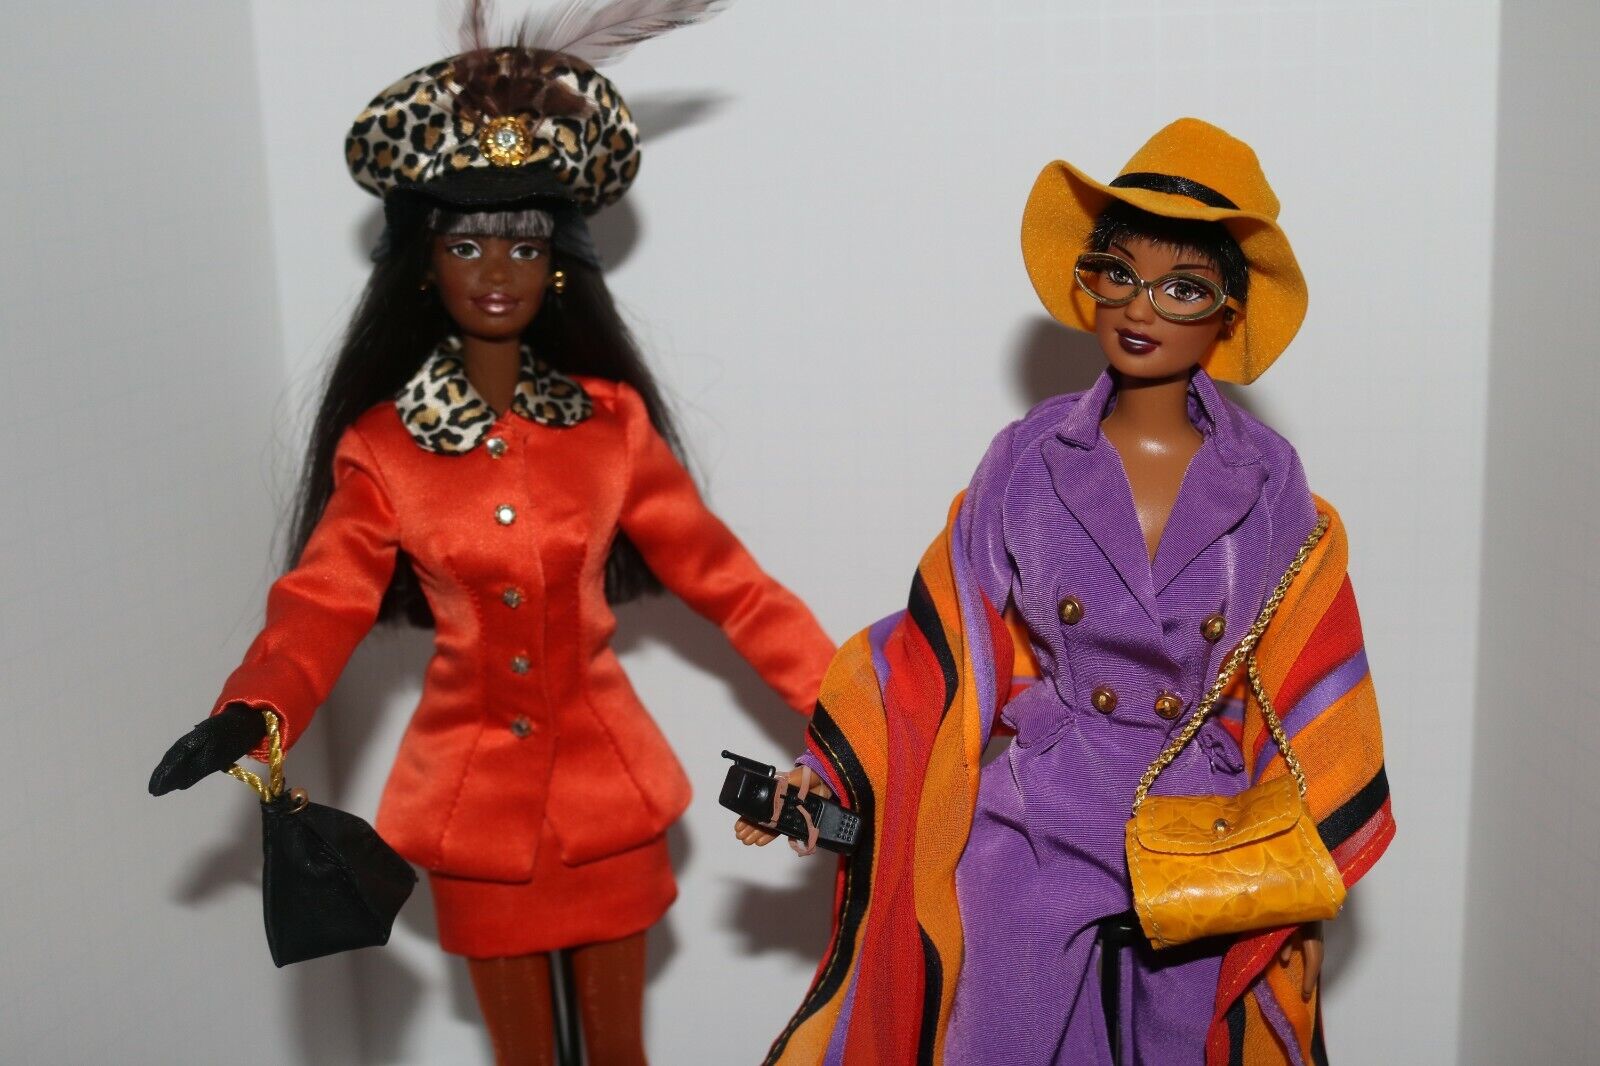 Fashion Savvy Tangerine Twist & Uptown Chic * Open Box Display Barbie Dolls * Mattel